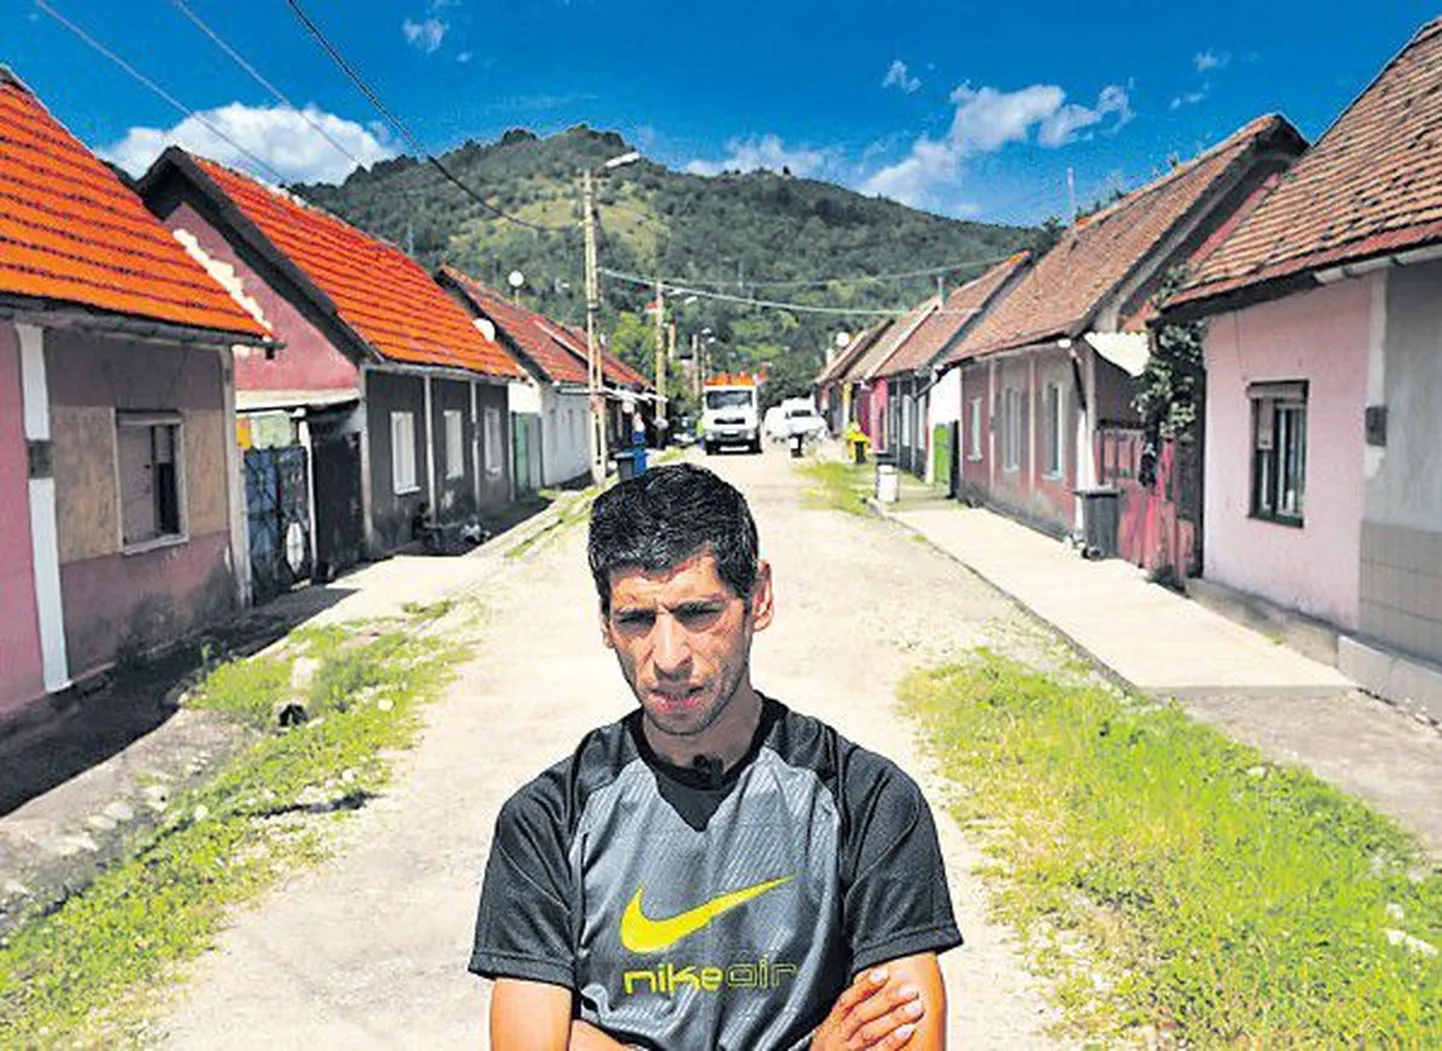 33-летний румынский цыган Габриэль подумывает о возвращении во Францию.